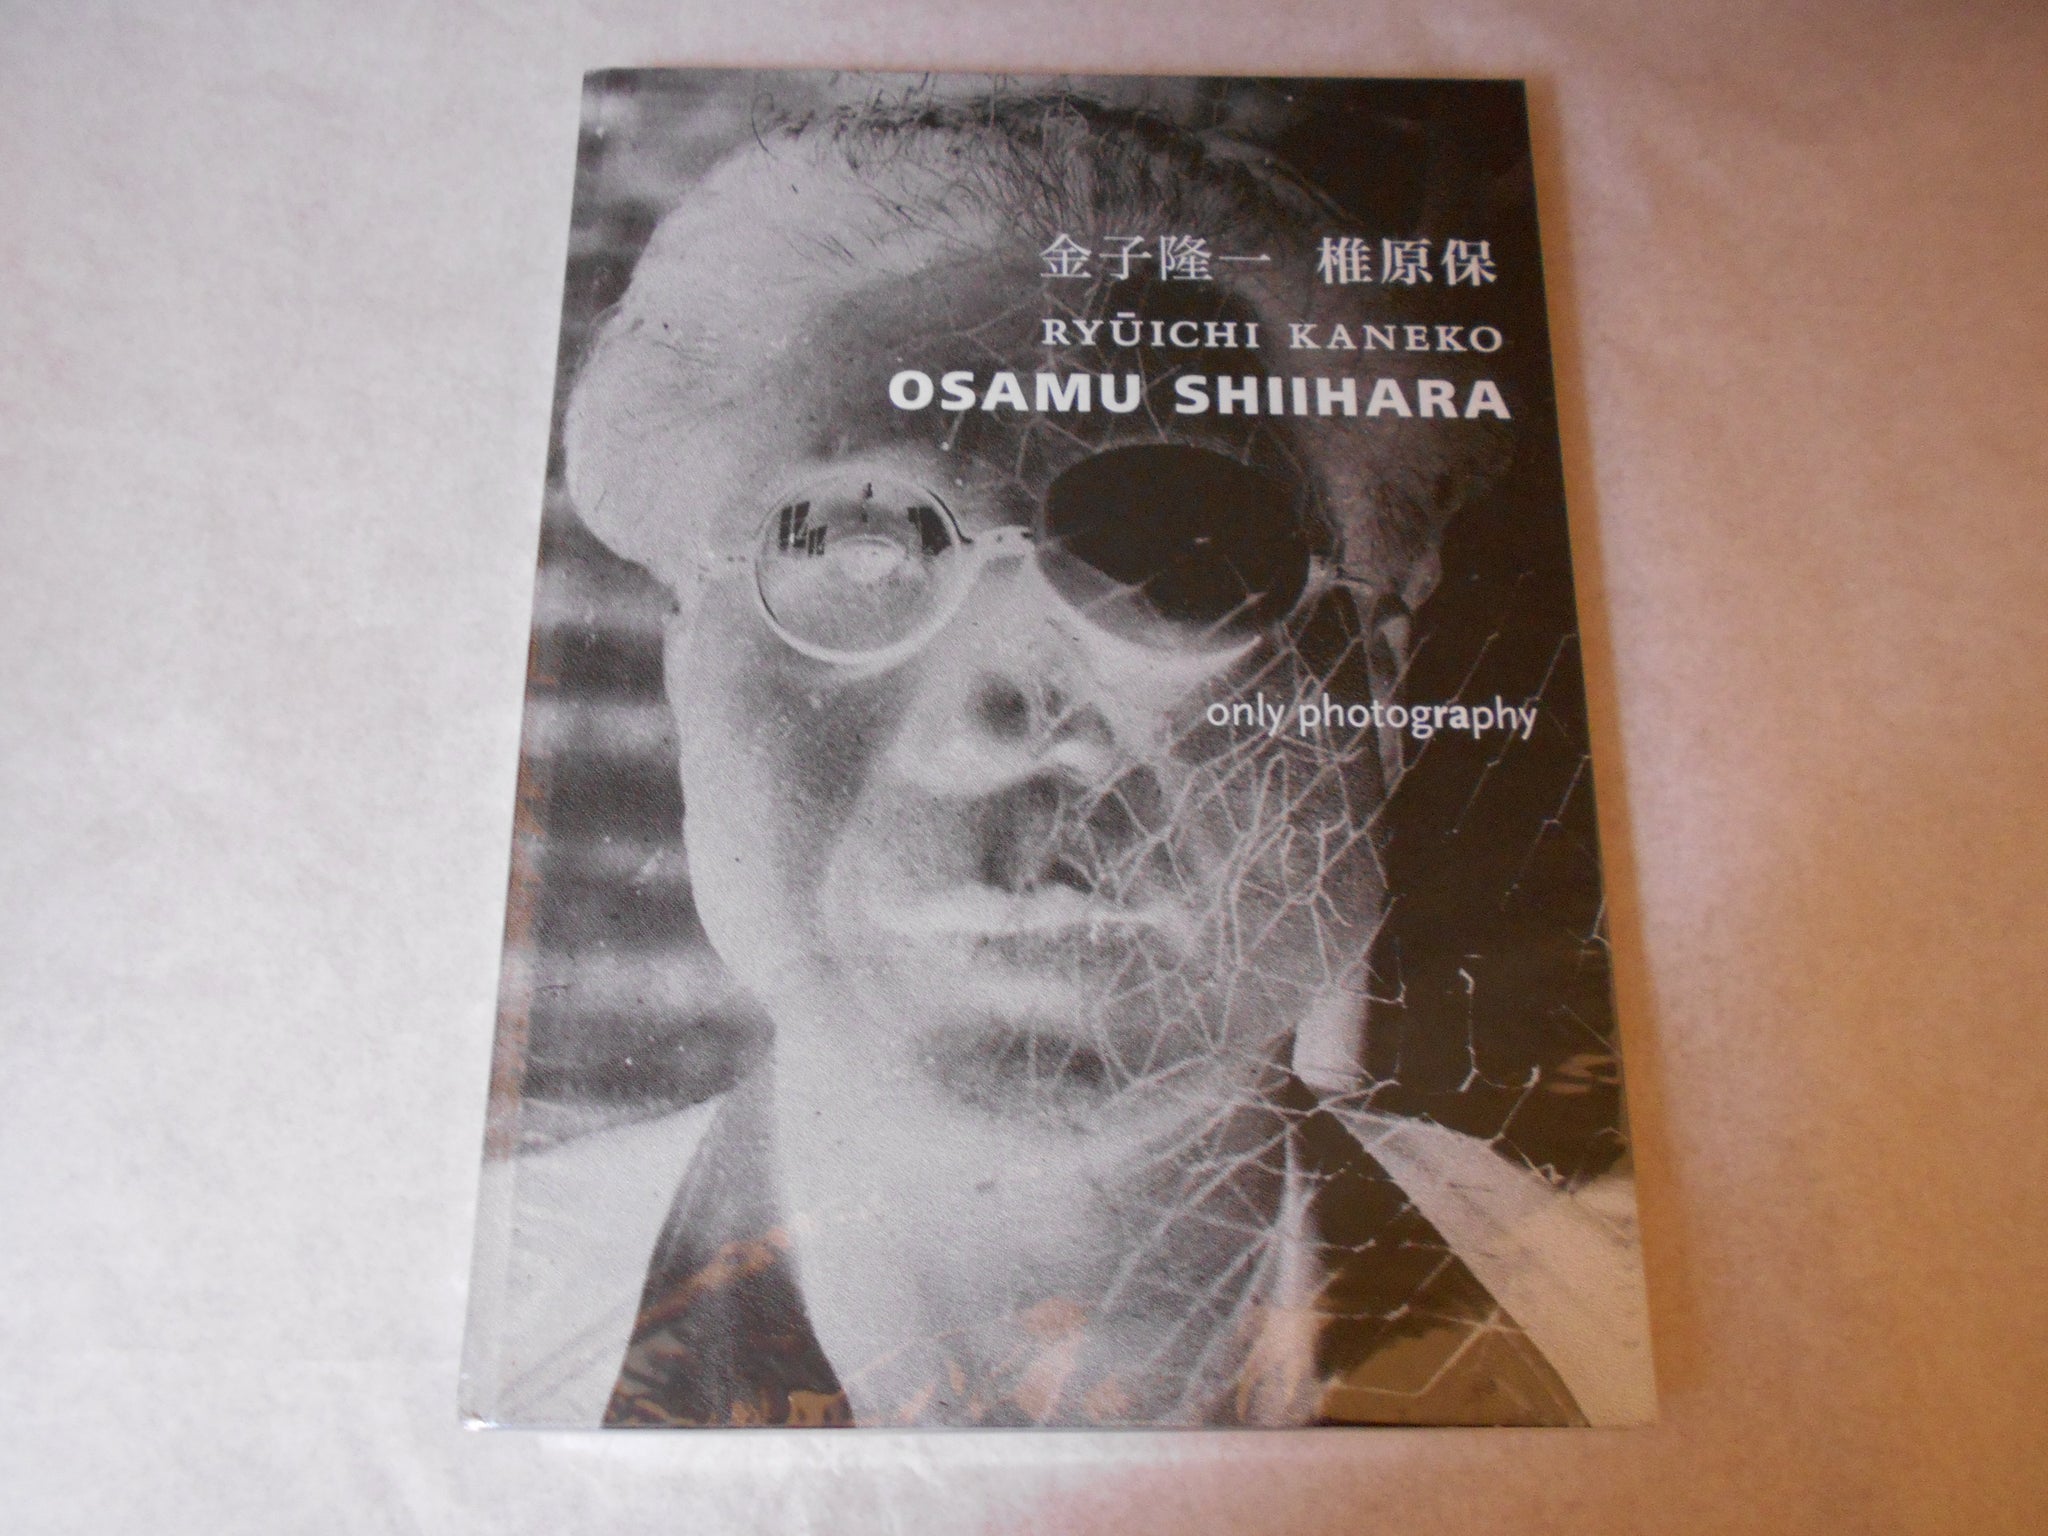 Osamu Shiihara | Osamu Shiihara, Ryuichi Kaneko | Only Photography 2016